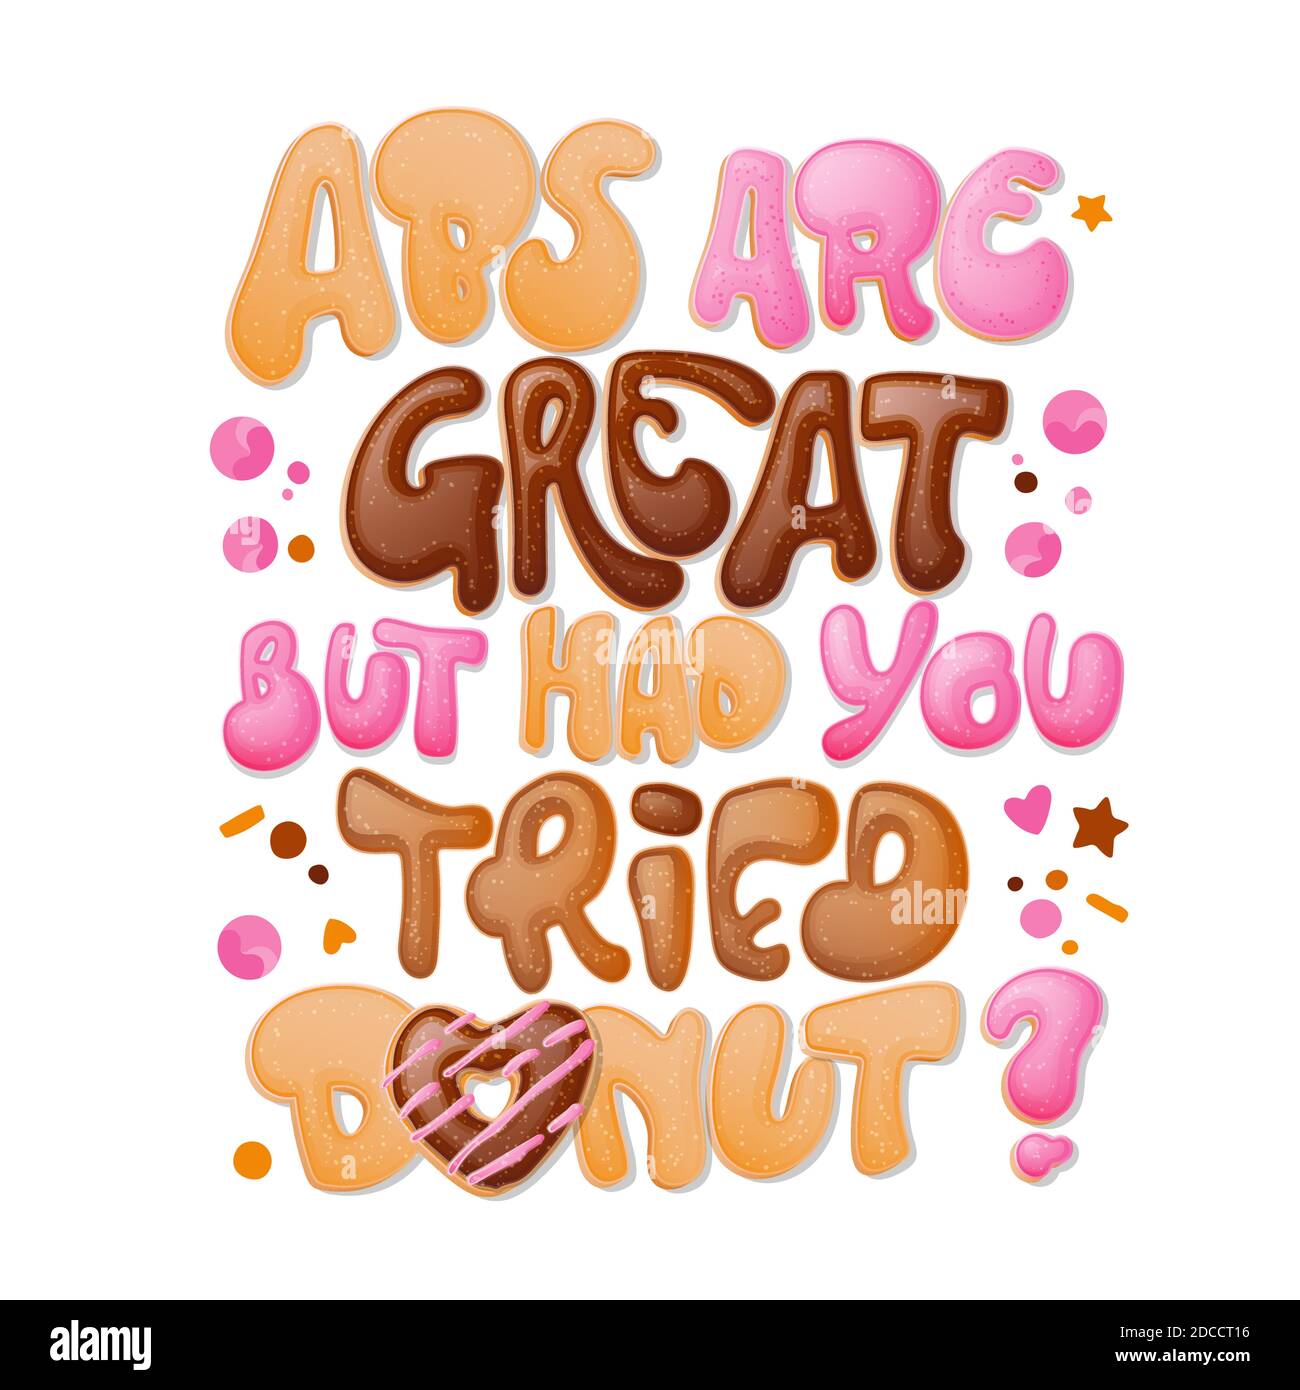 Gli ABS sono grandi ma avete provato le ciambelle - frase divertente della scritta del pun. Design a tema di ciambelle e dolci. Illustrazione Vettoriale